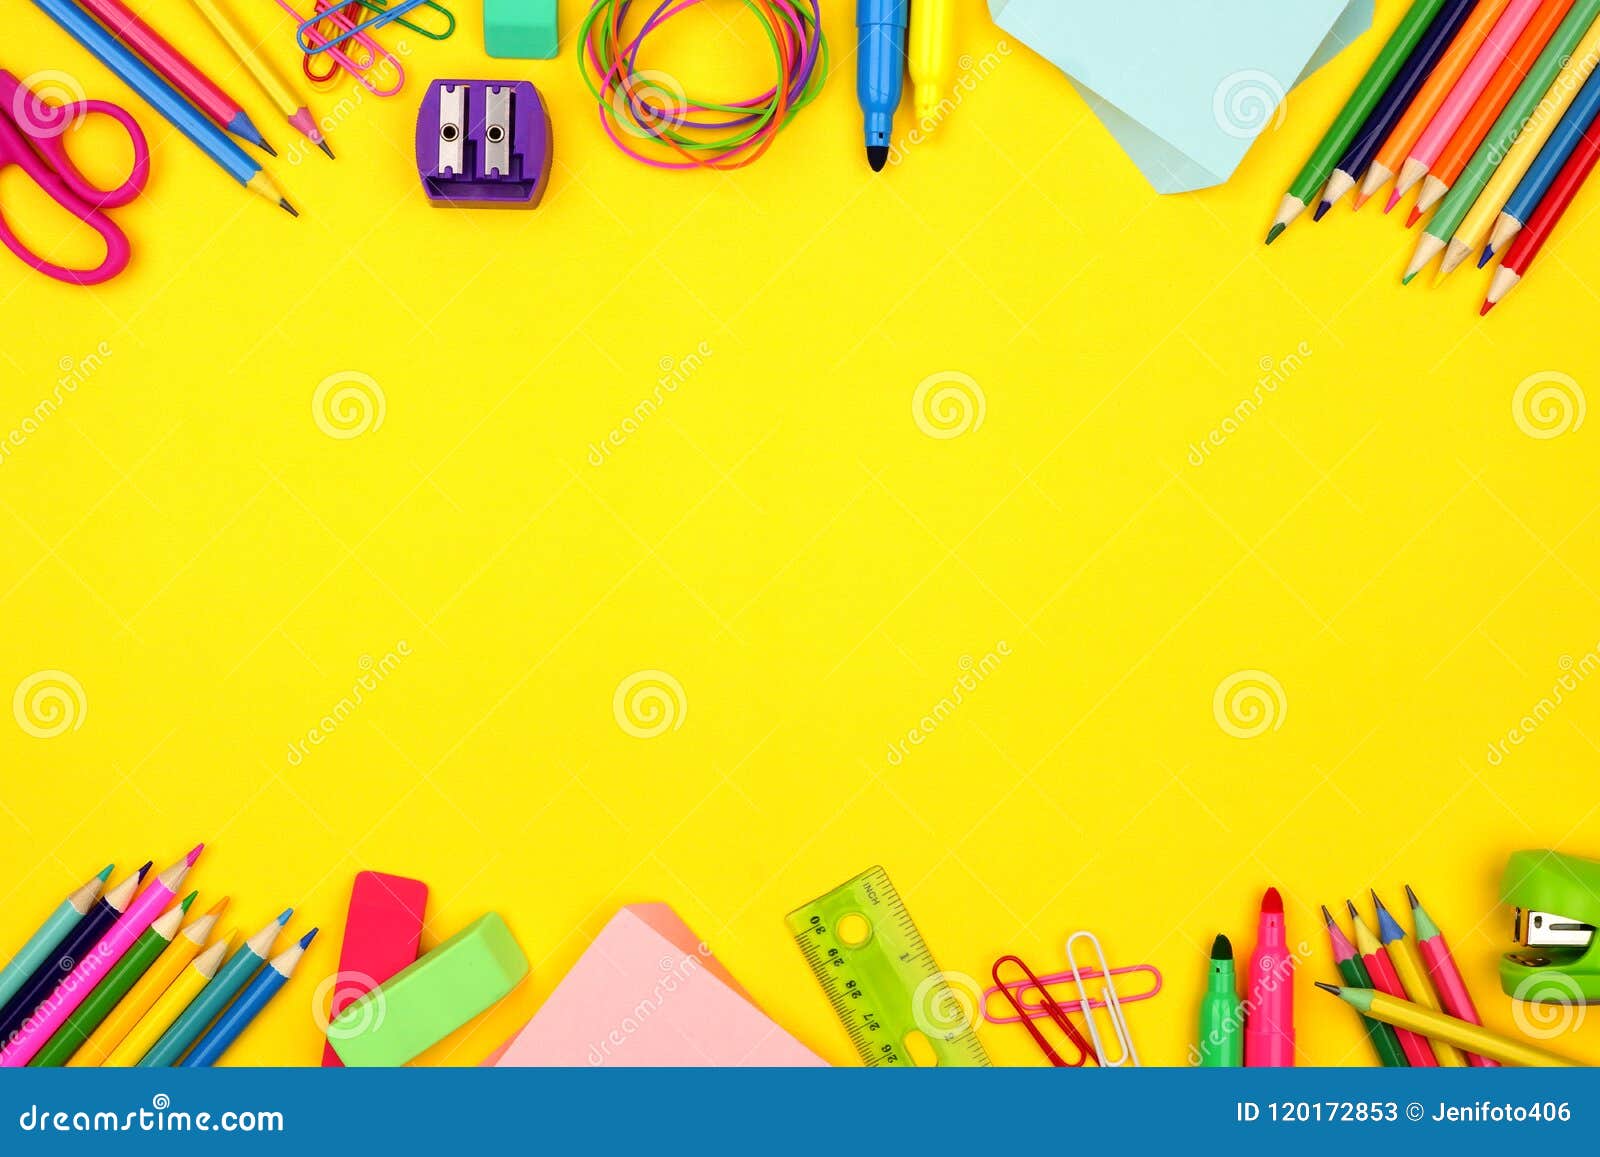 De School Levert Dubbele Grens Over Een Gele Achtergrond Stock Afbeelding - Image of potlood, 120172853